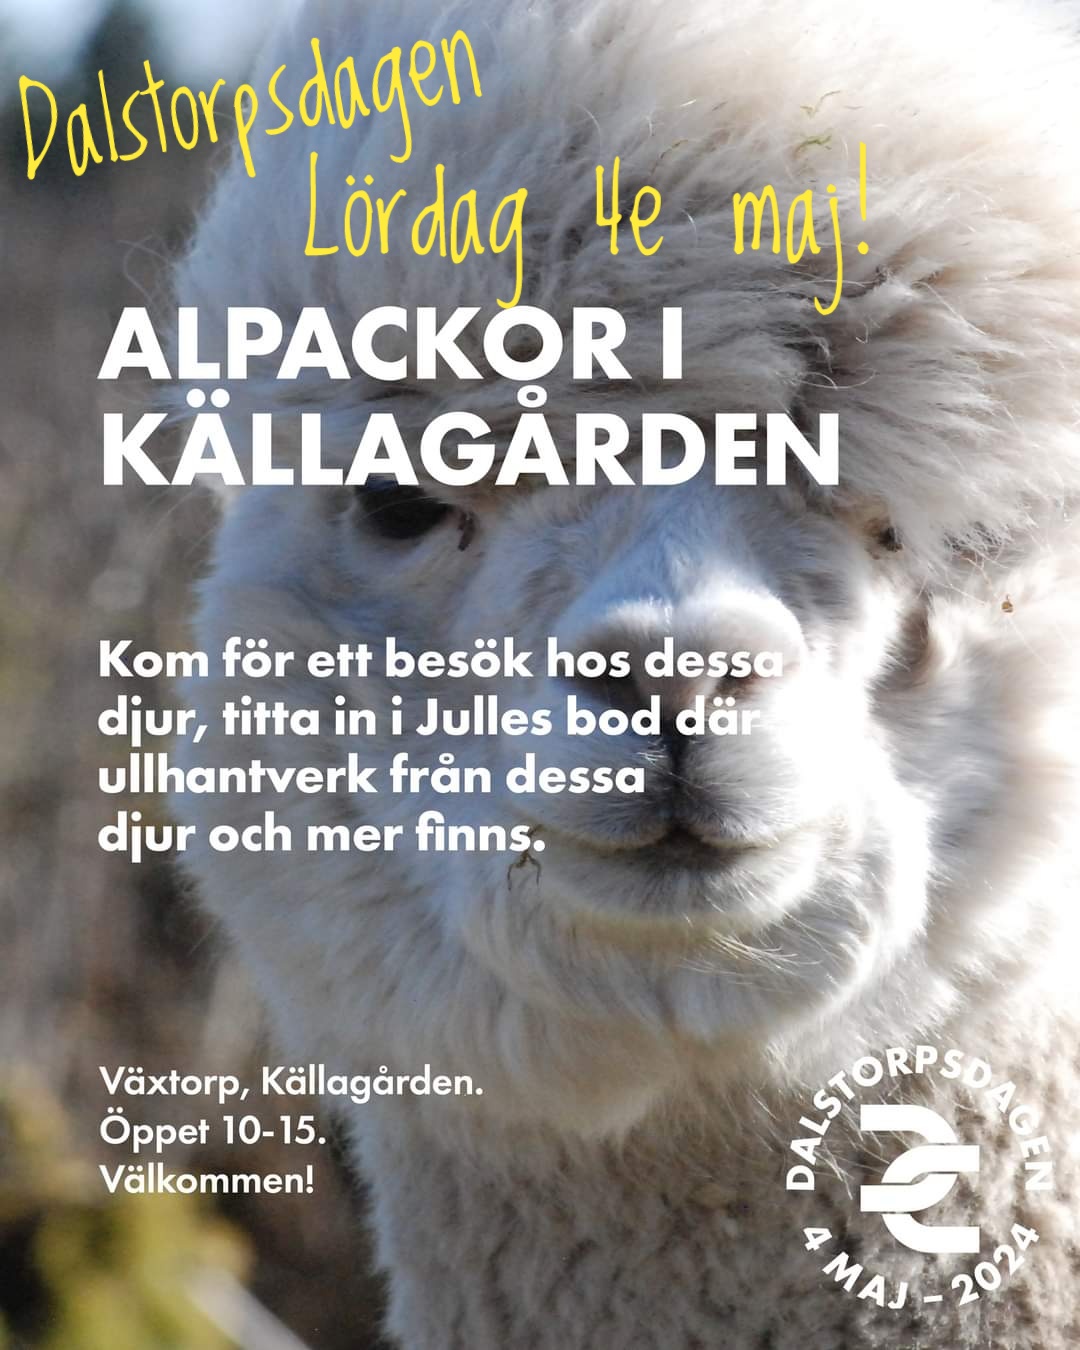 Välkomna att träffa våra alpackor!